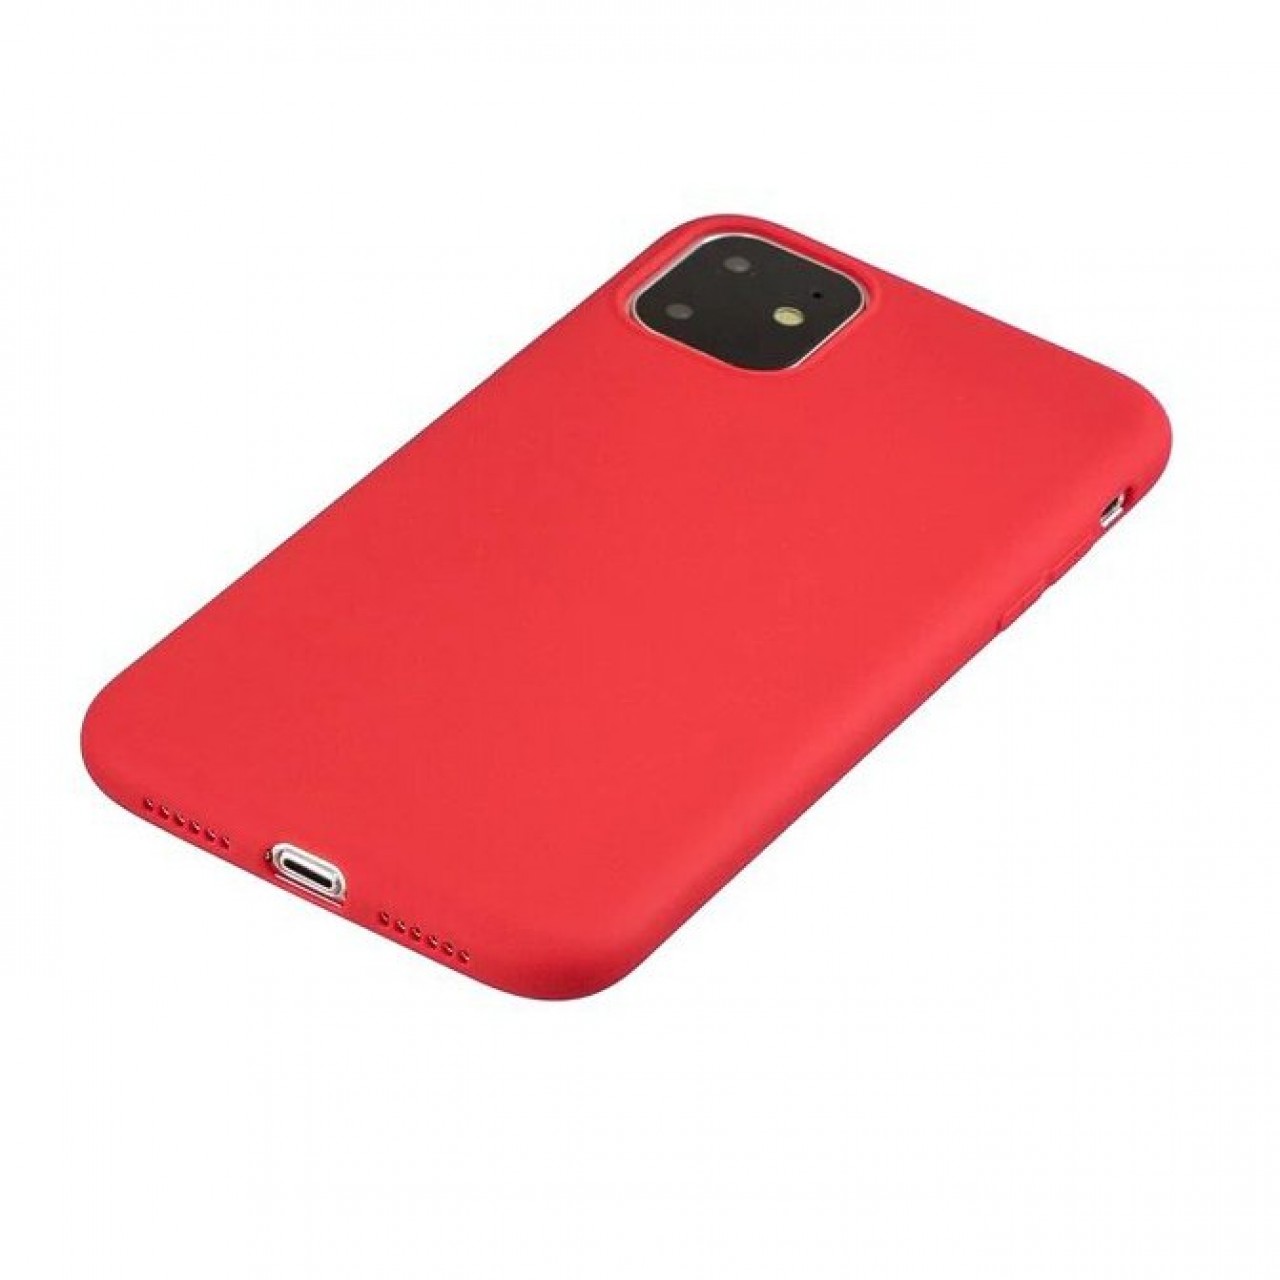 Θήκη iPhone 11 Soft Flexible Rubber Cover Σιλικόνης - 5556 - Κόκκινο - Hurtel